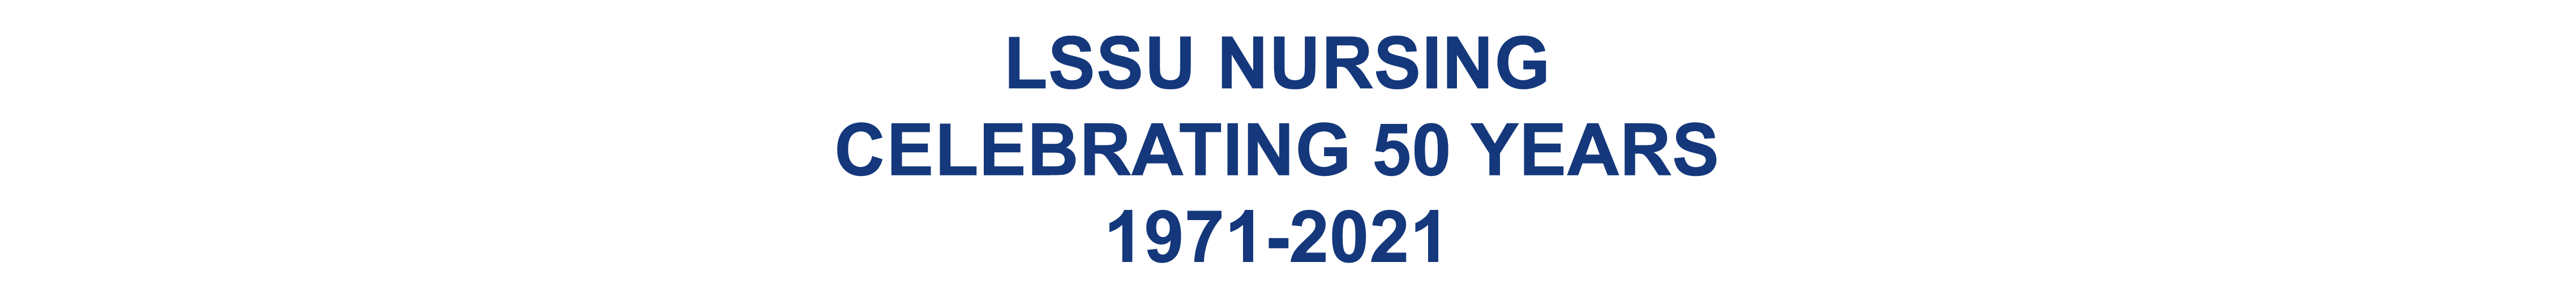 LSSU Nursing celebrating 50 years 1971-2021